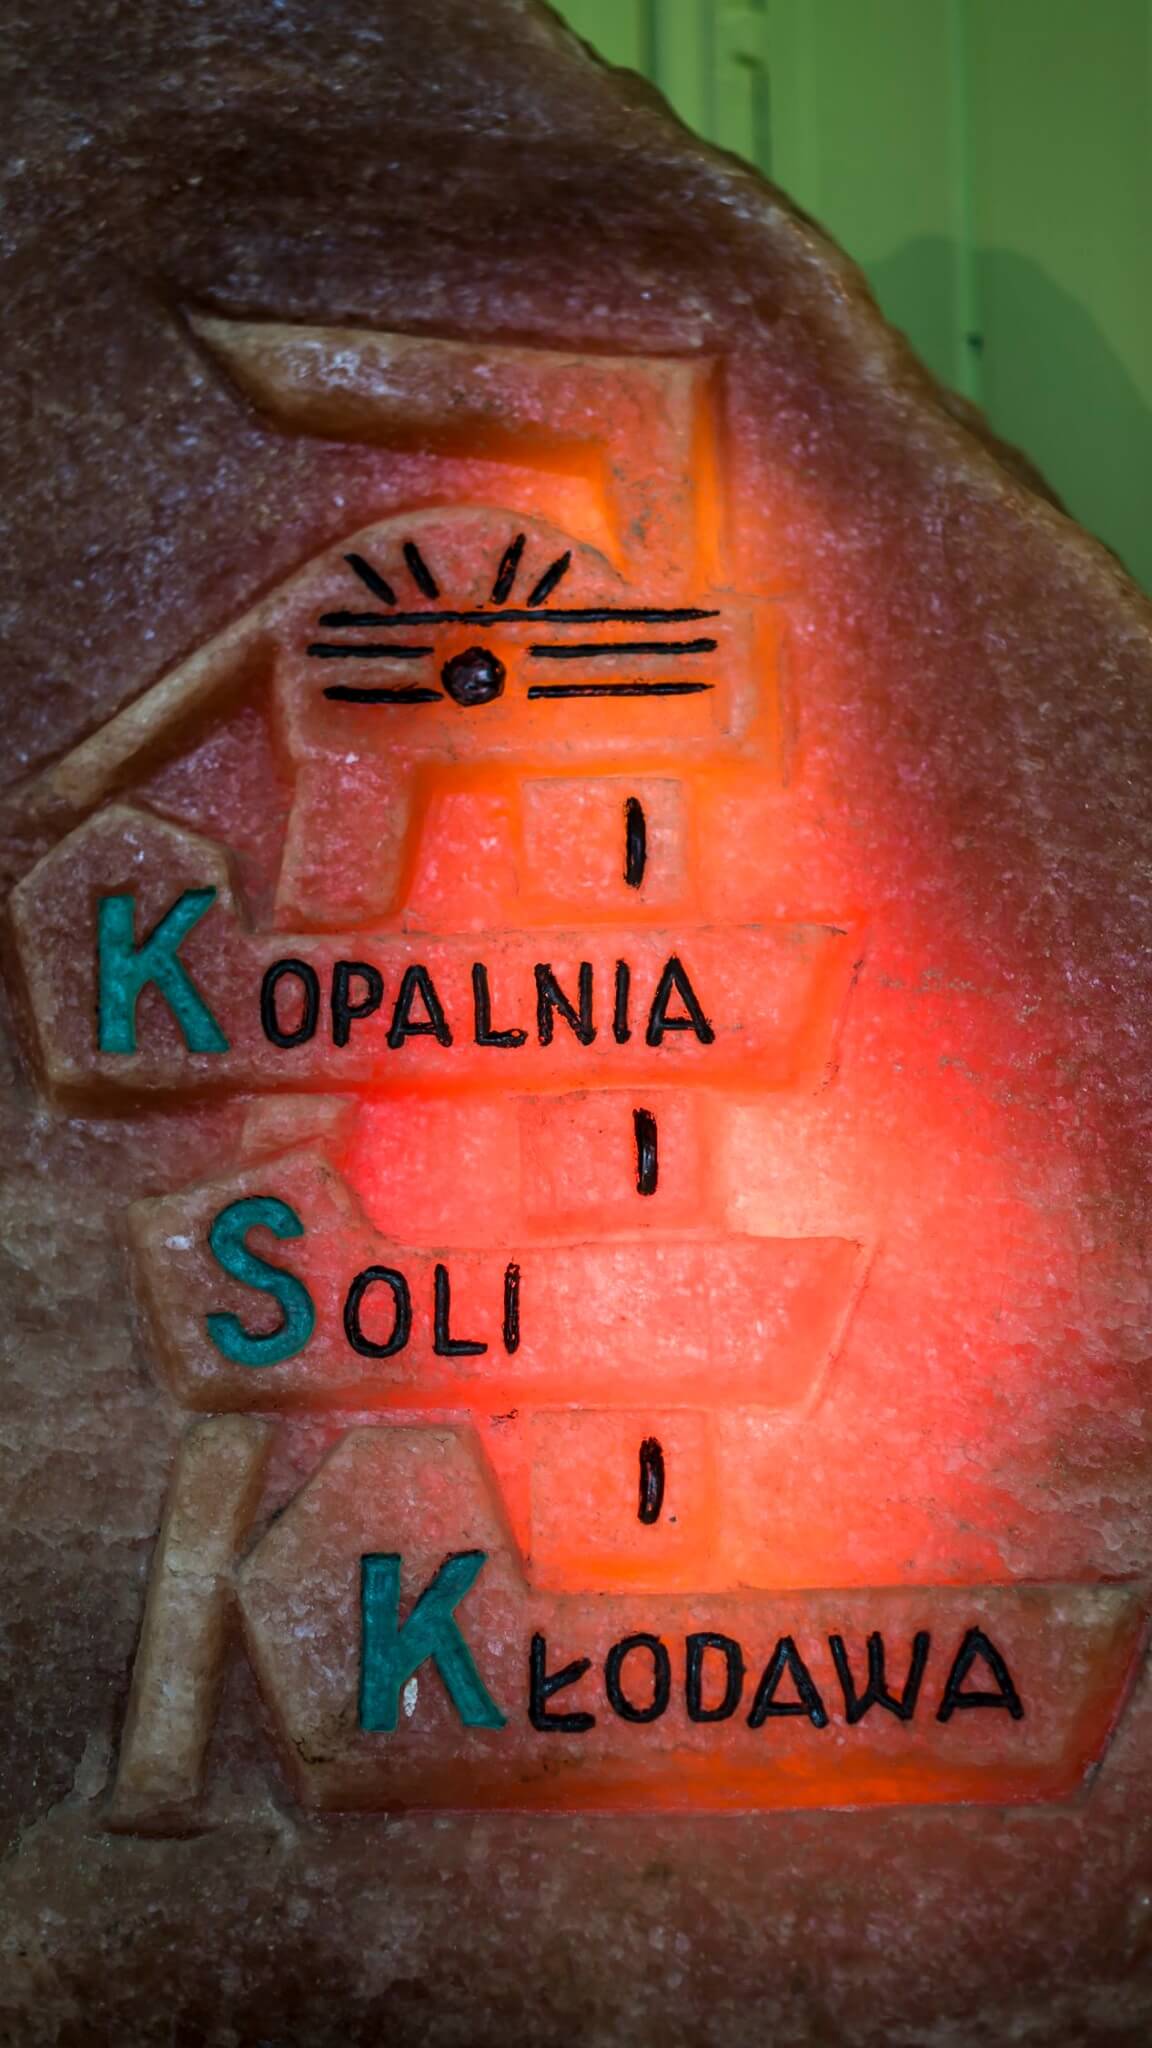 Kopalnia Soli w Kłodawie